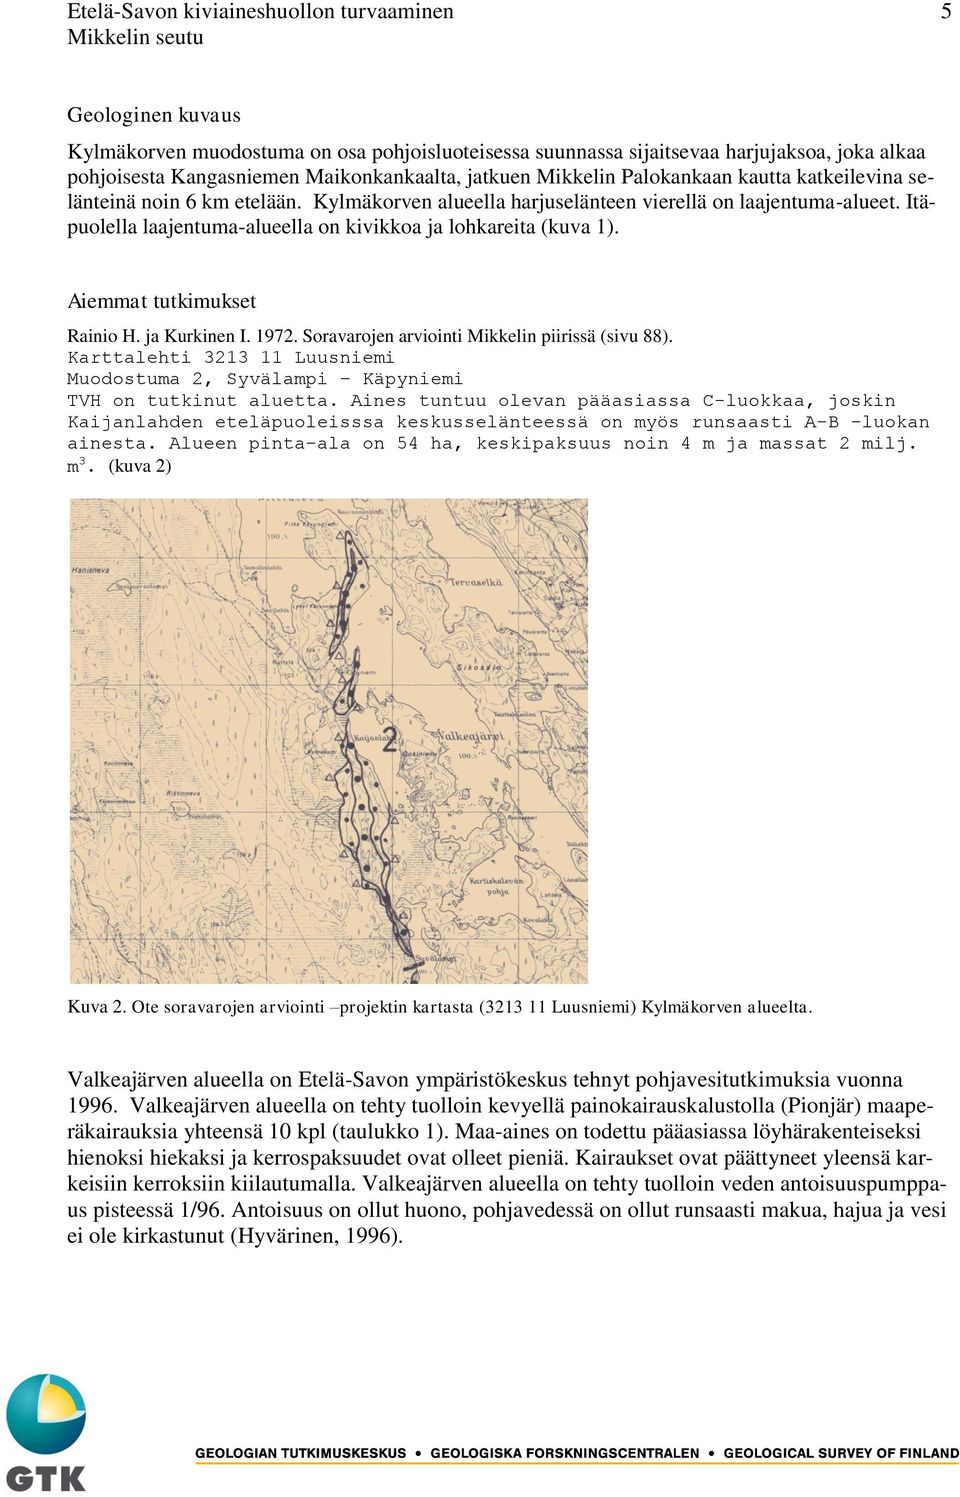 Itäpuolella laajentuma-alueella on kivikkoa ja lohkareita (kuva 1). Aiemmat tutkimukset Rainio H. ja Kurkinen I. 1972. Soravarojen arviointi Mikkelin piirissä (sivu 88).